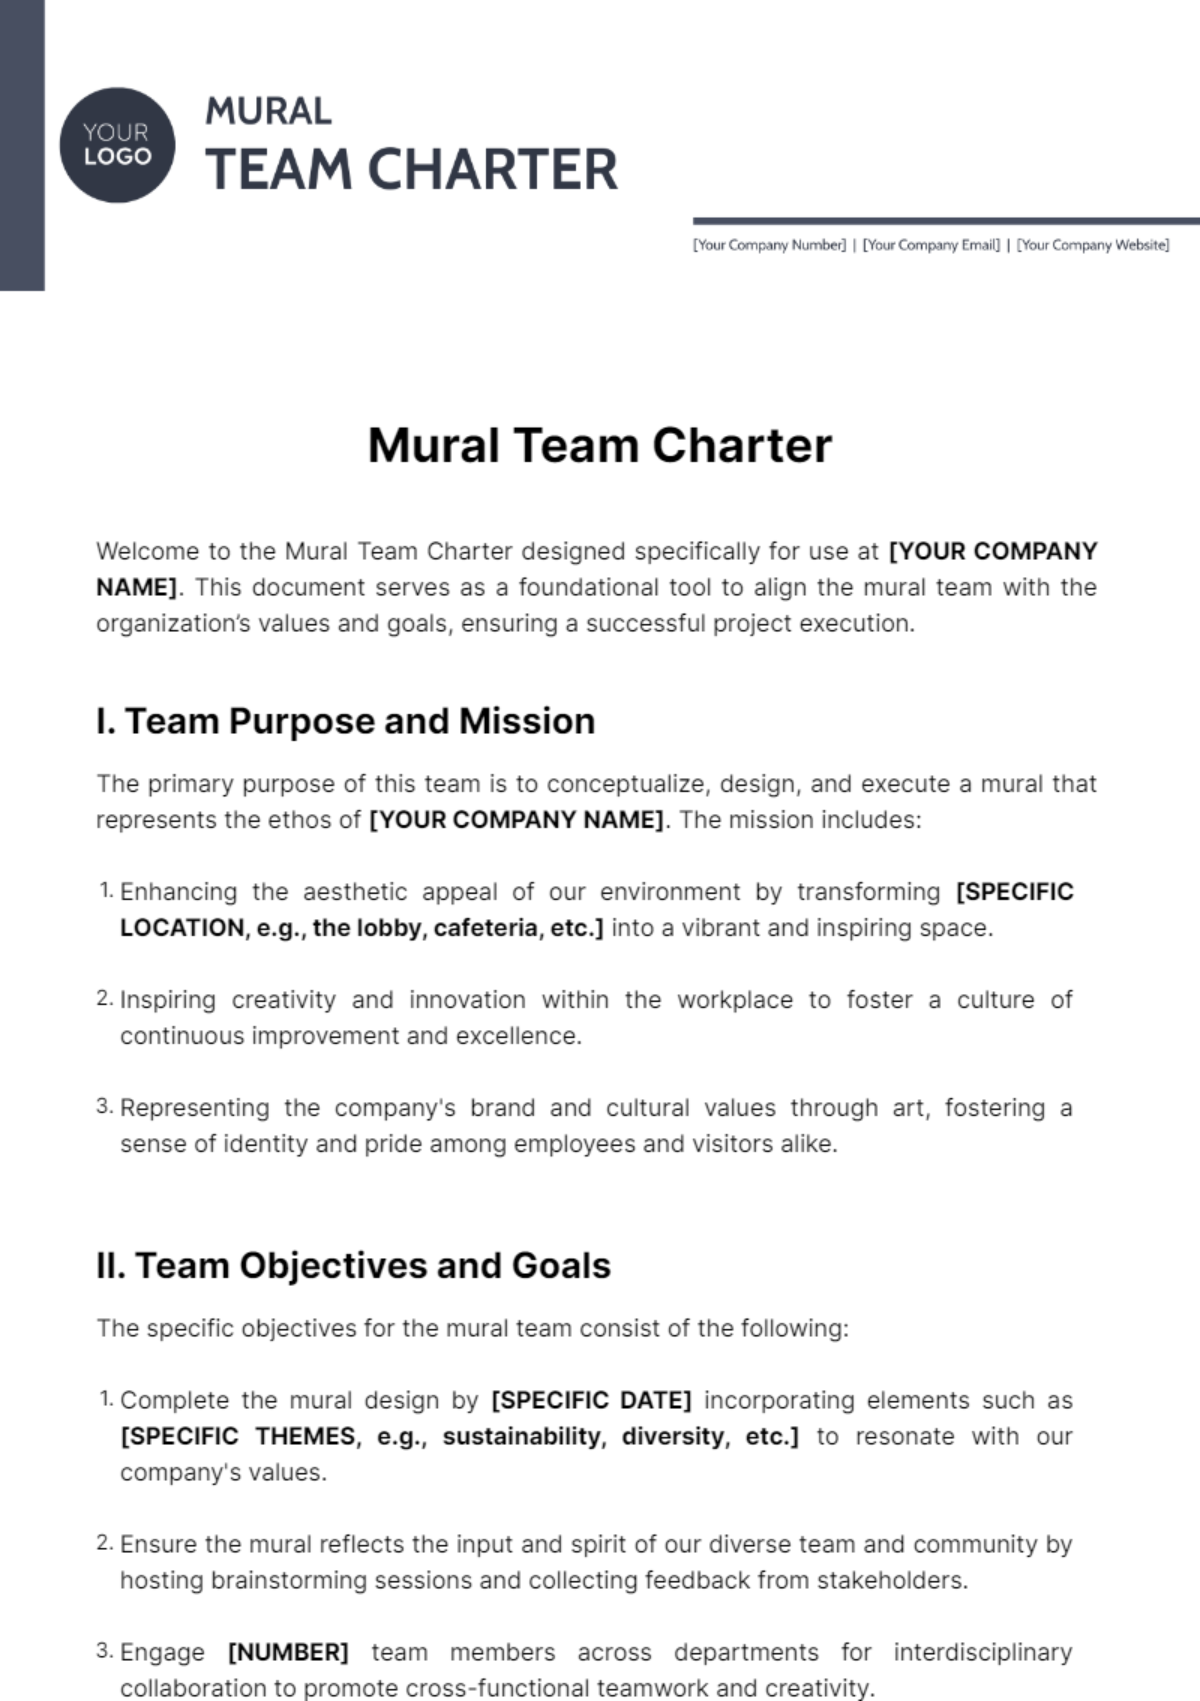 Mural Team Charter Template